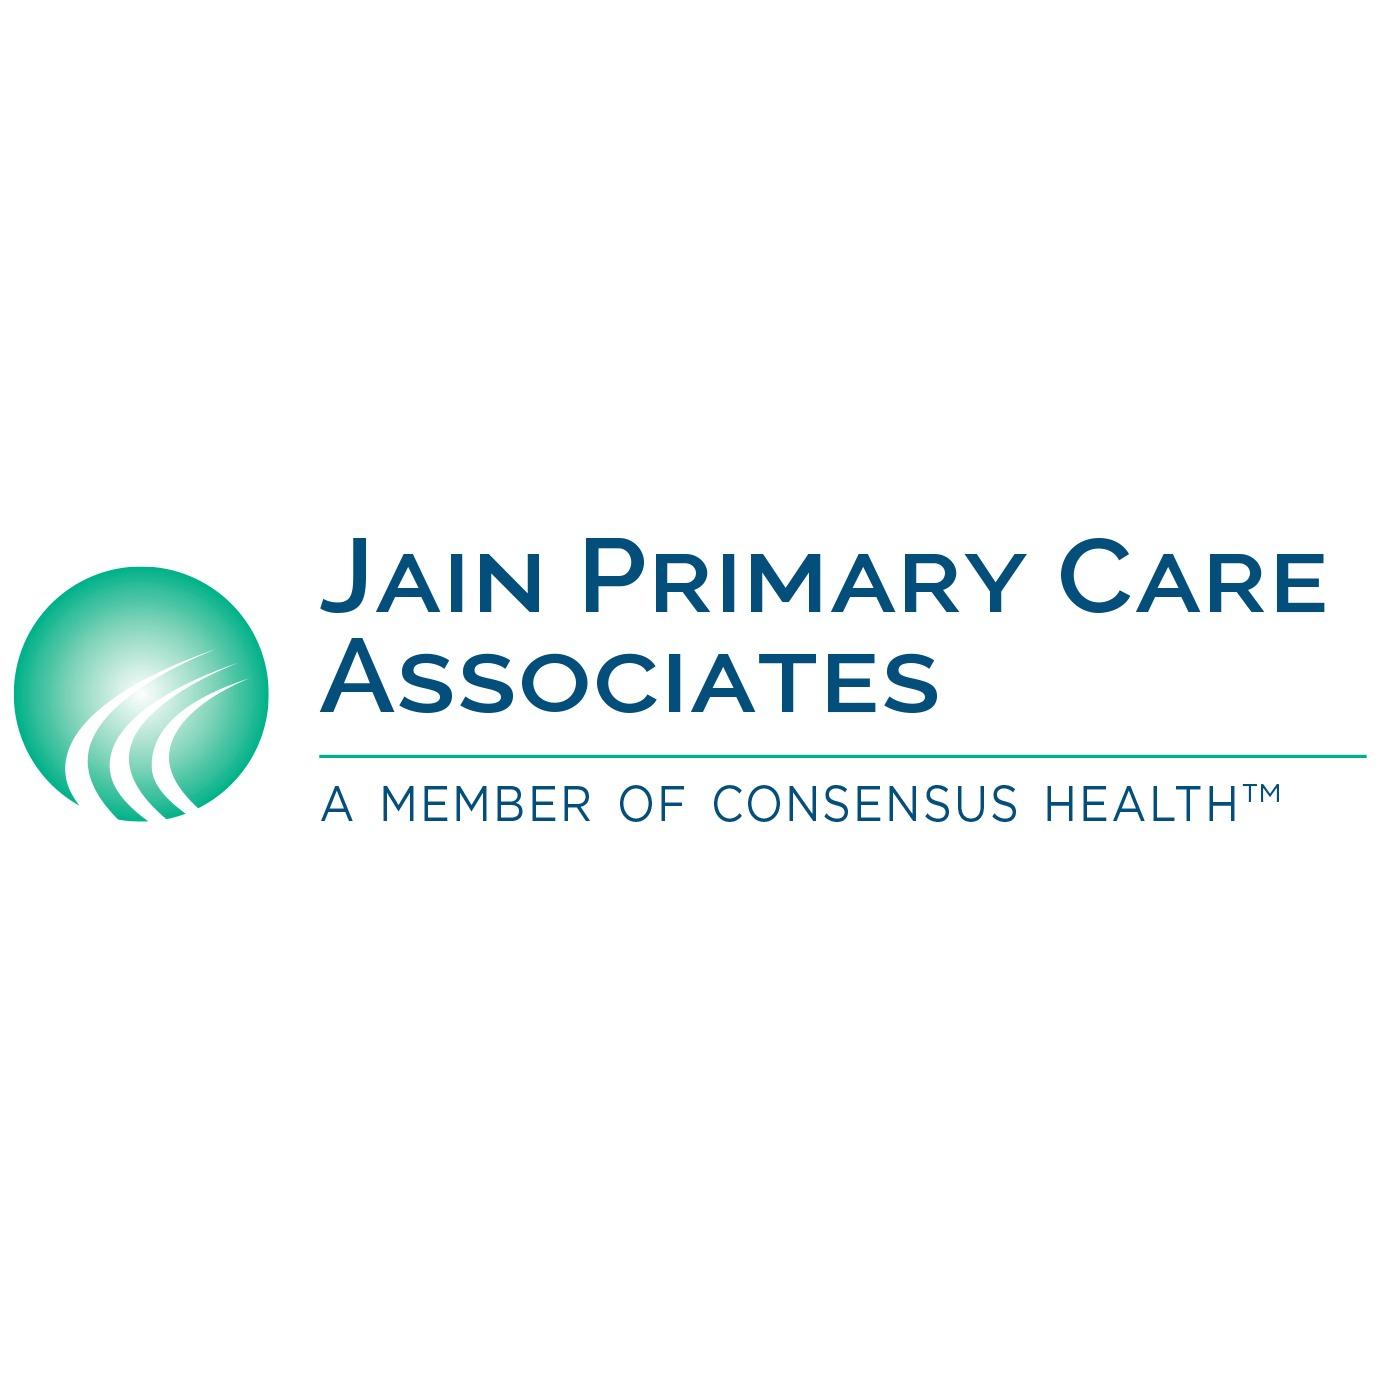 Jain Primary Care Associates